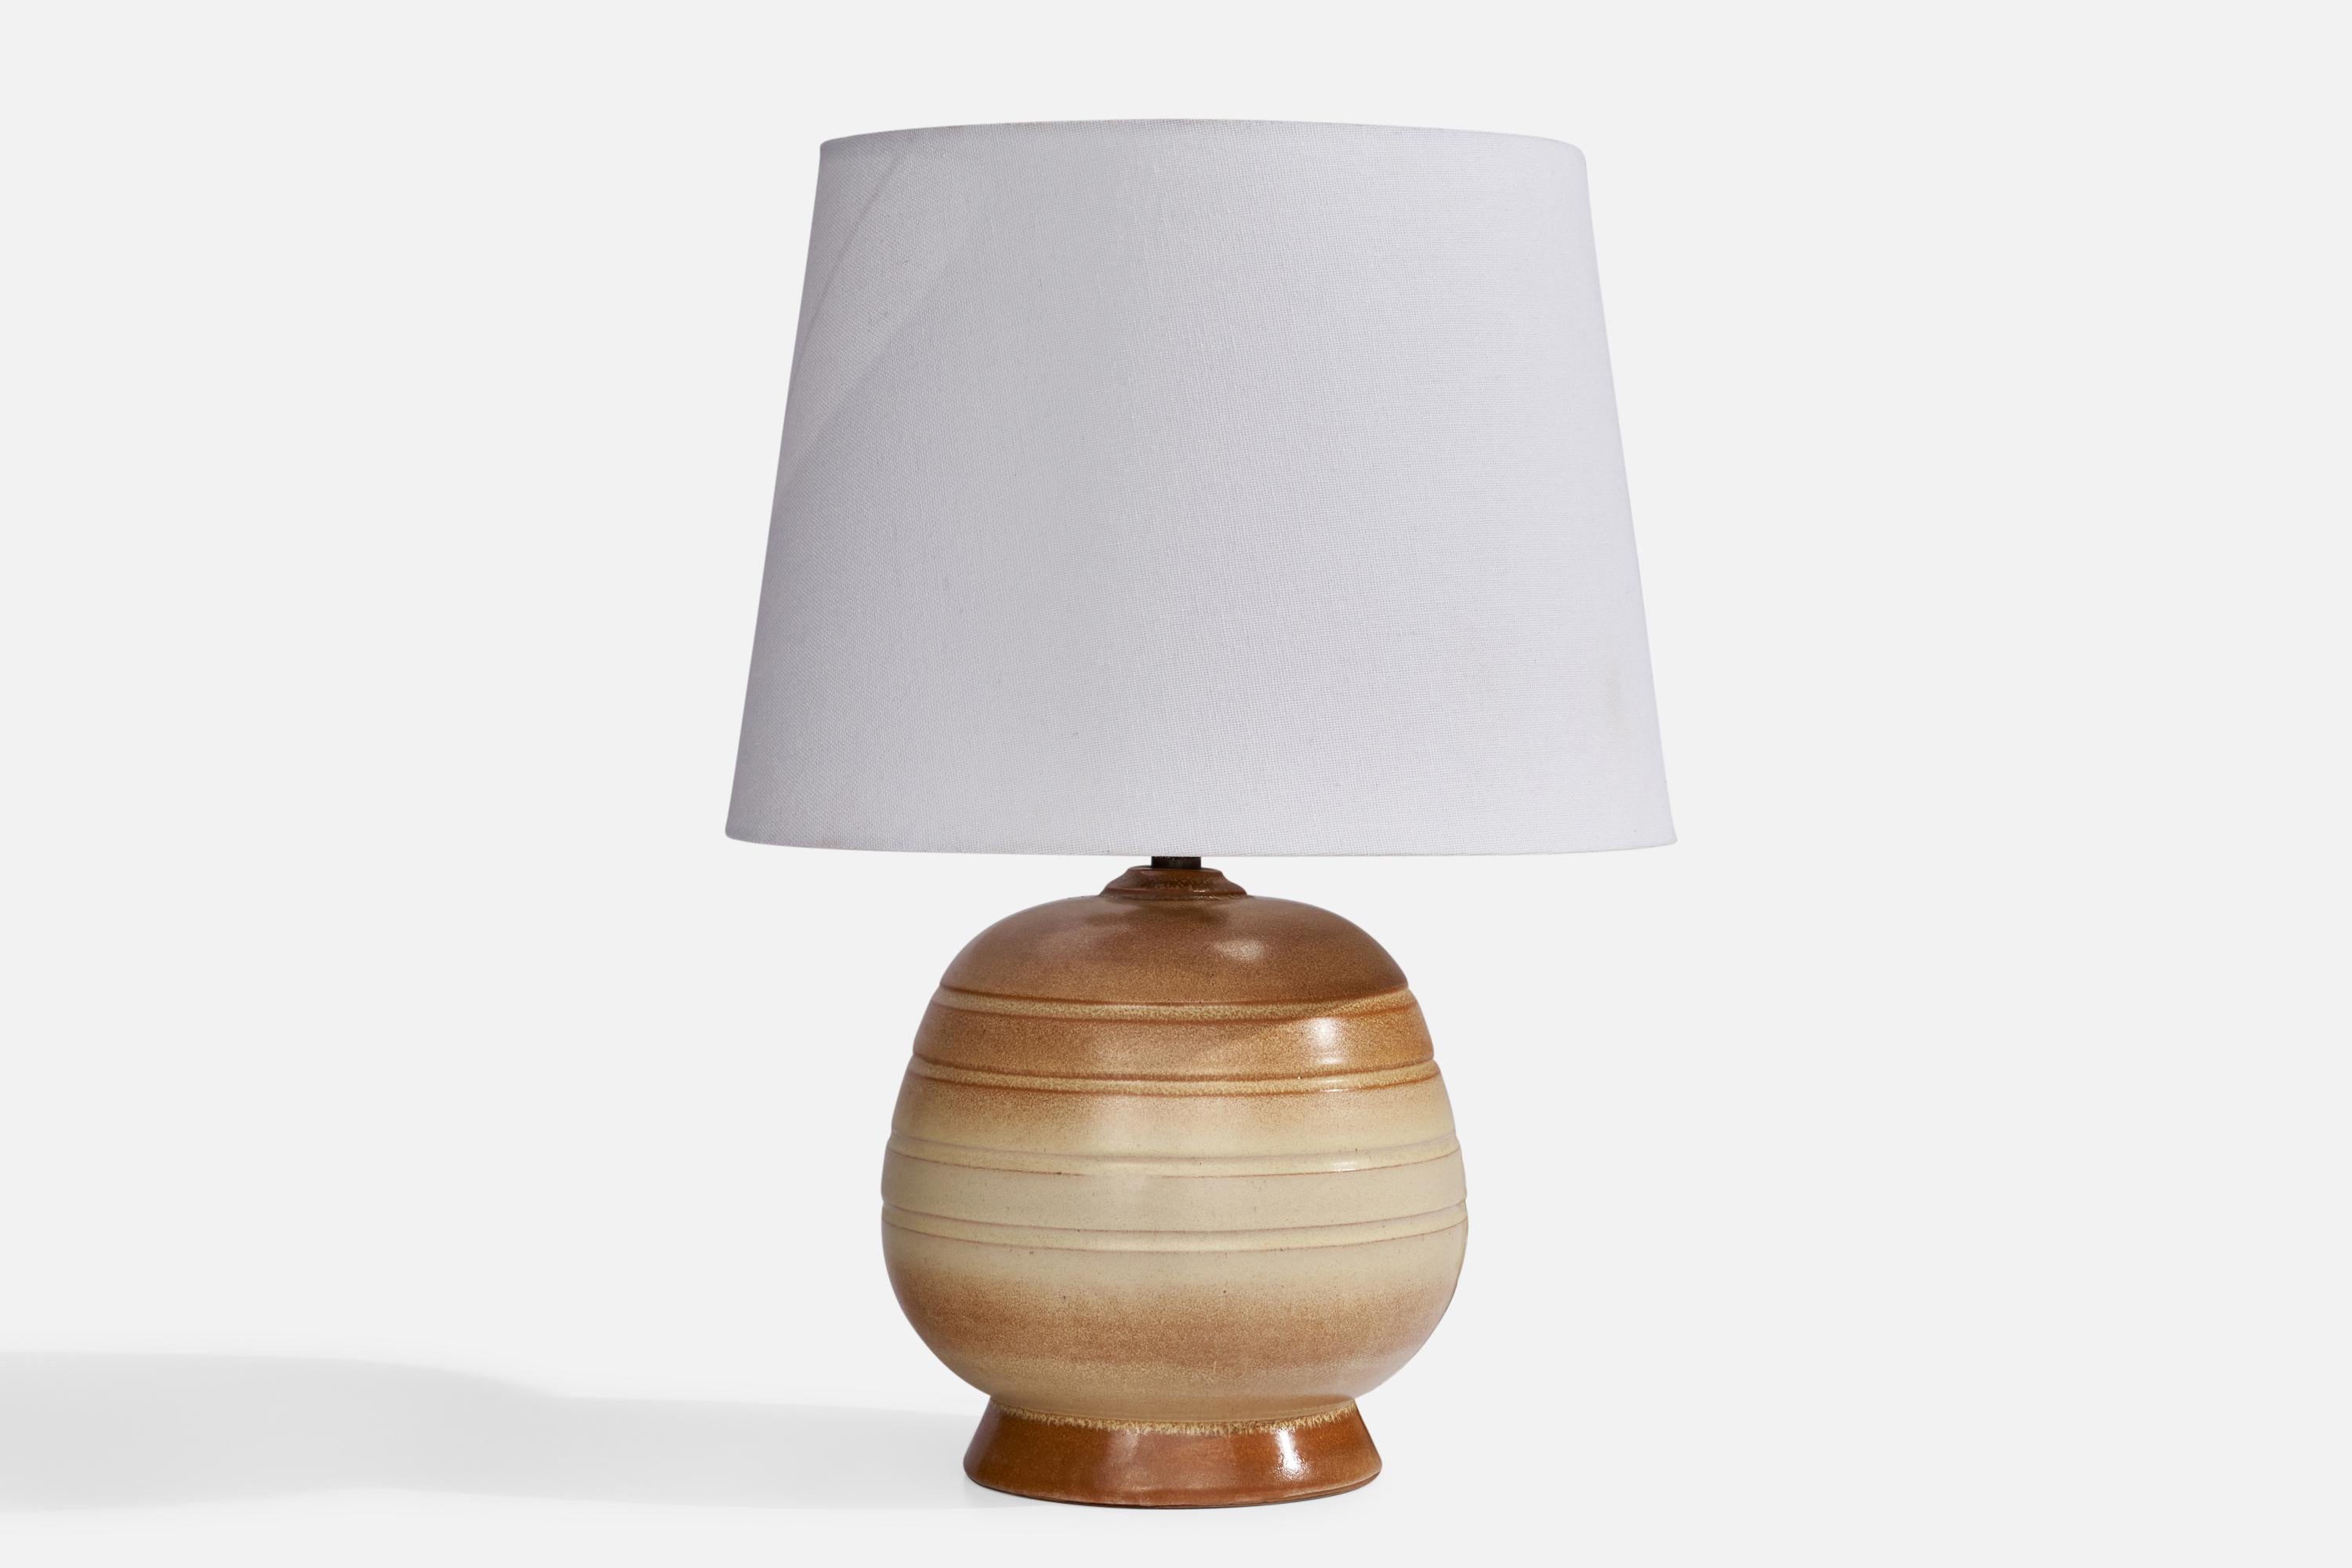 Eine braune und beige glasierte Keramik-Tischlampe, entworfen und hergestellt in Schweden, um 1940.

Abmessungen der Lampe (Zoll): 9